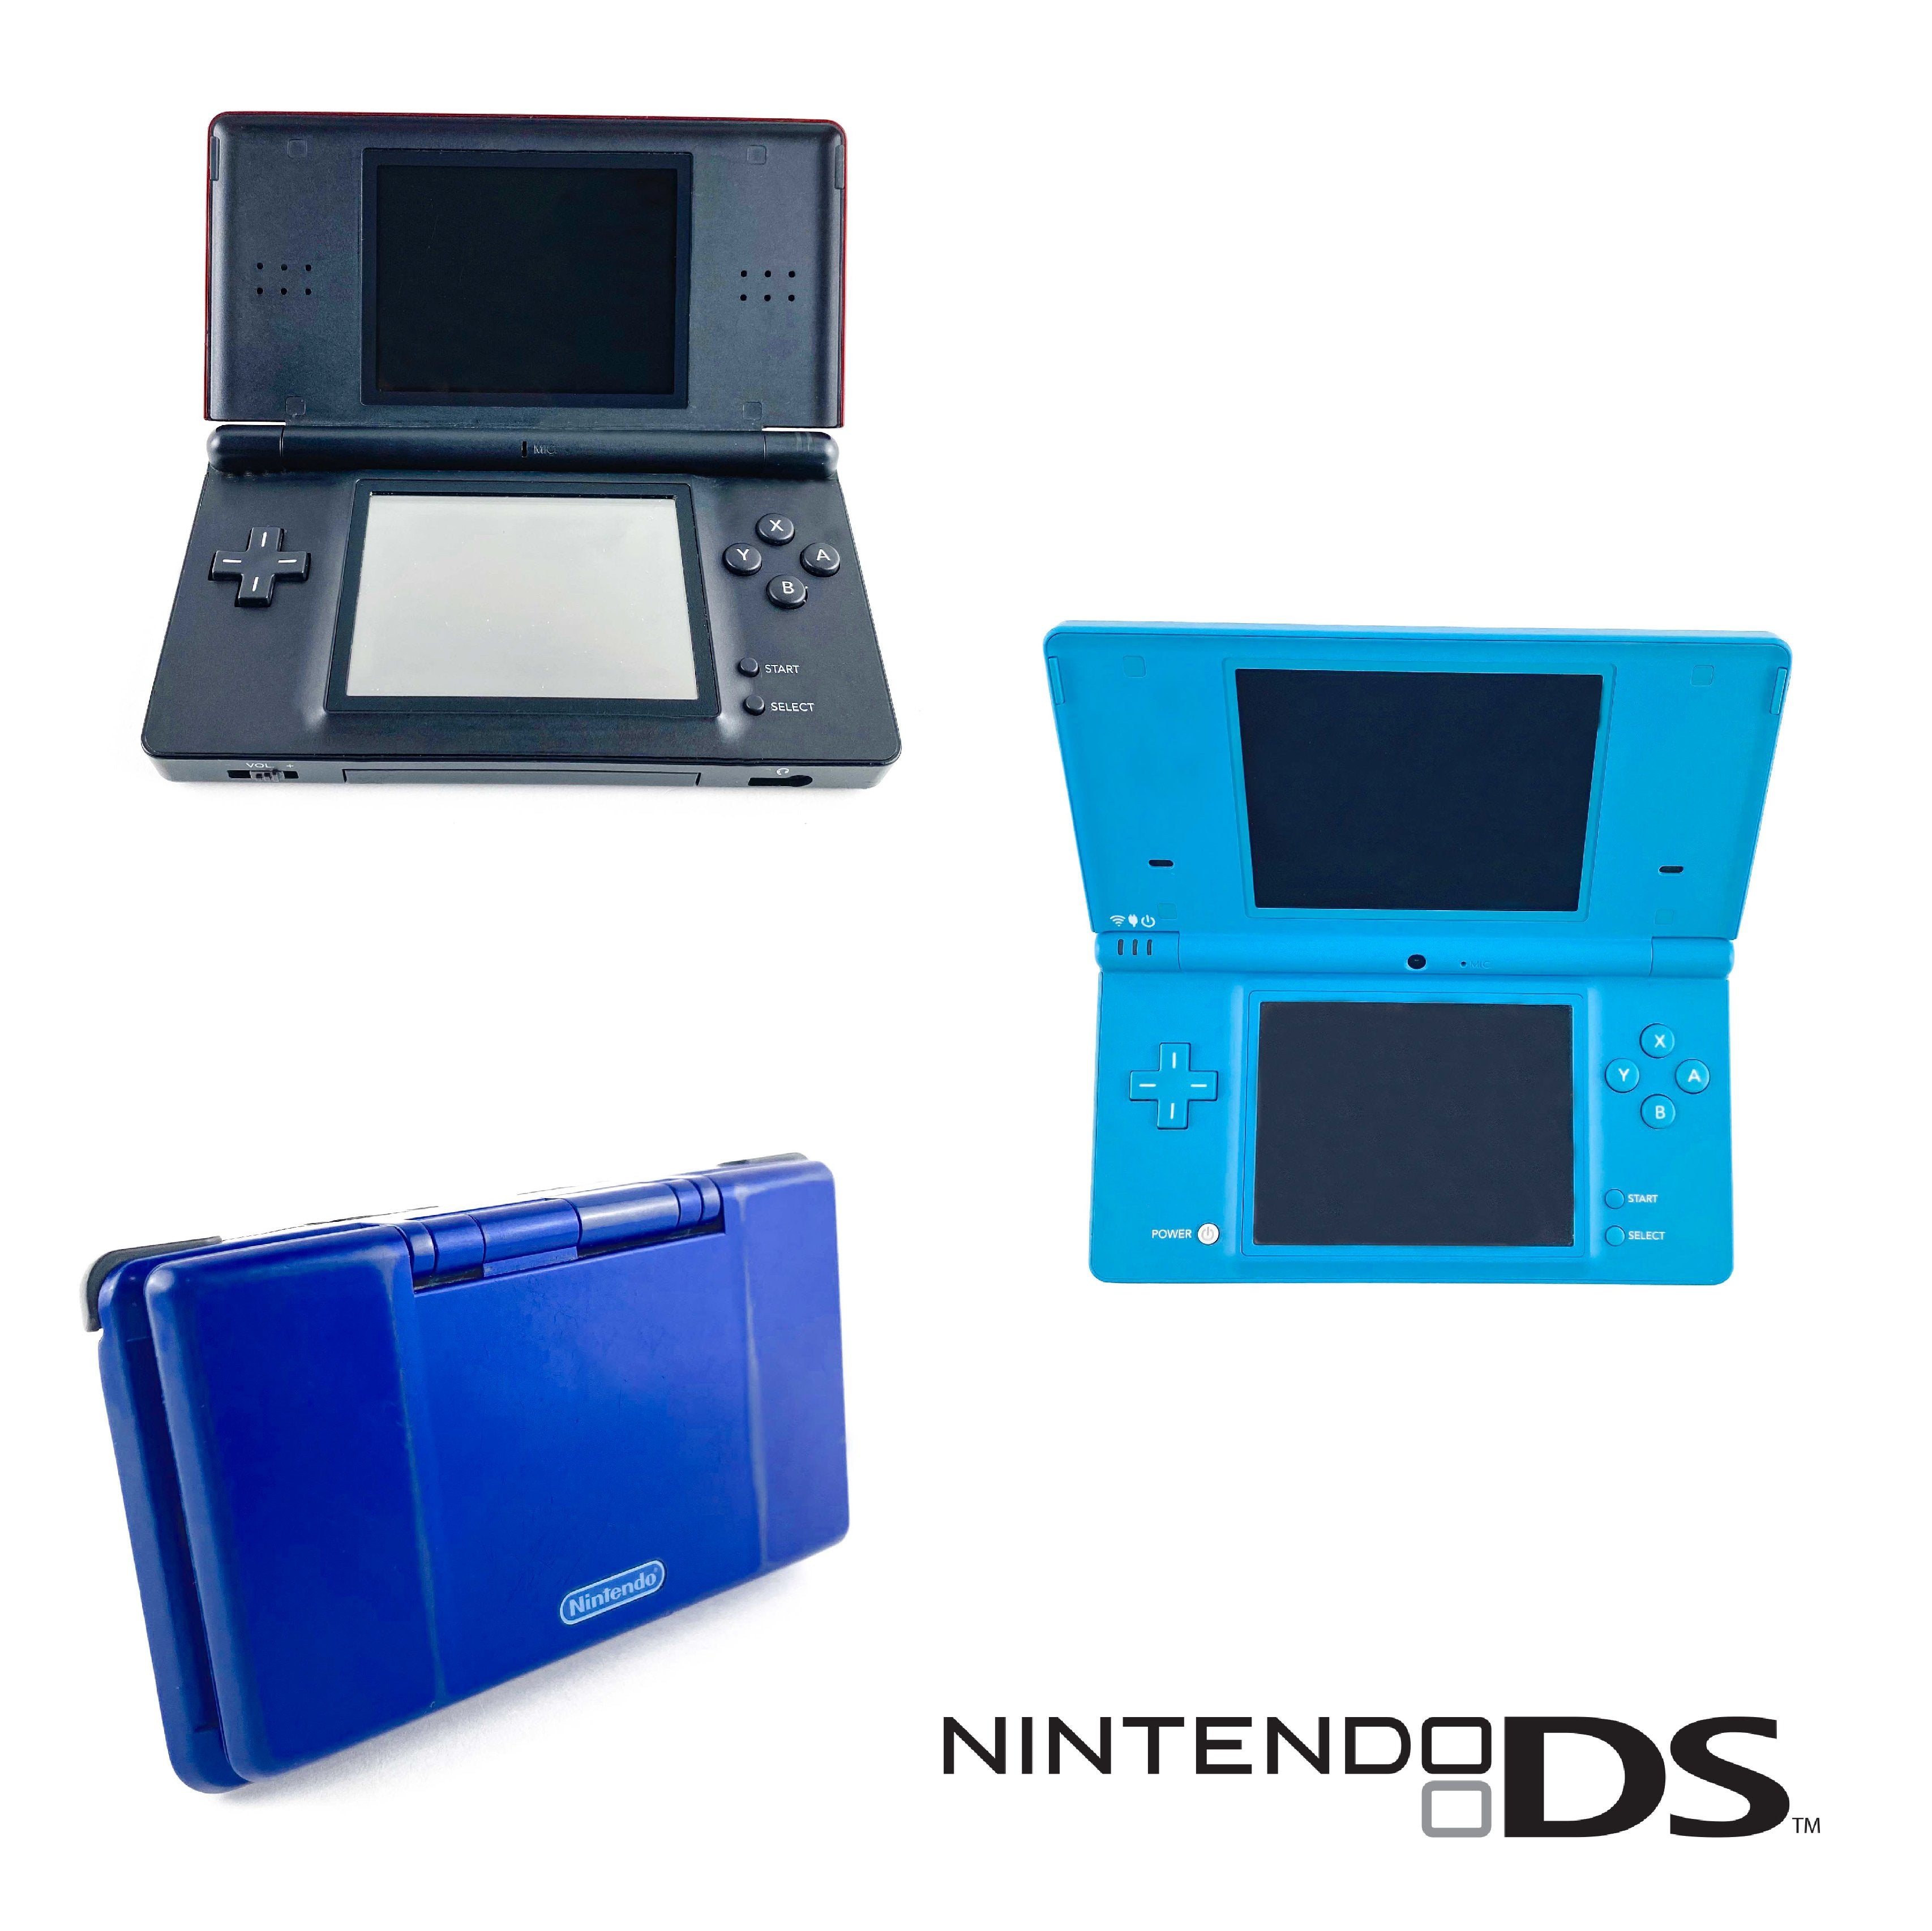 Shop Nintendo DS Consoles